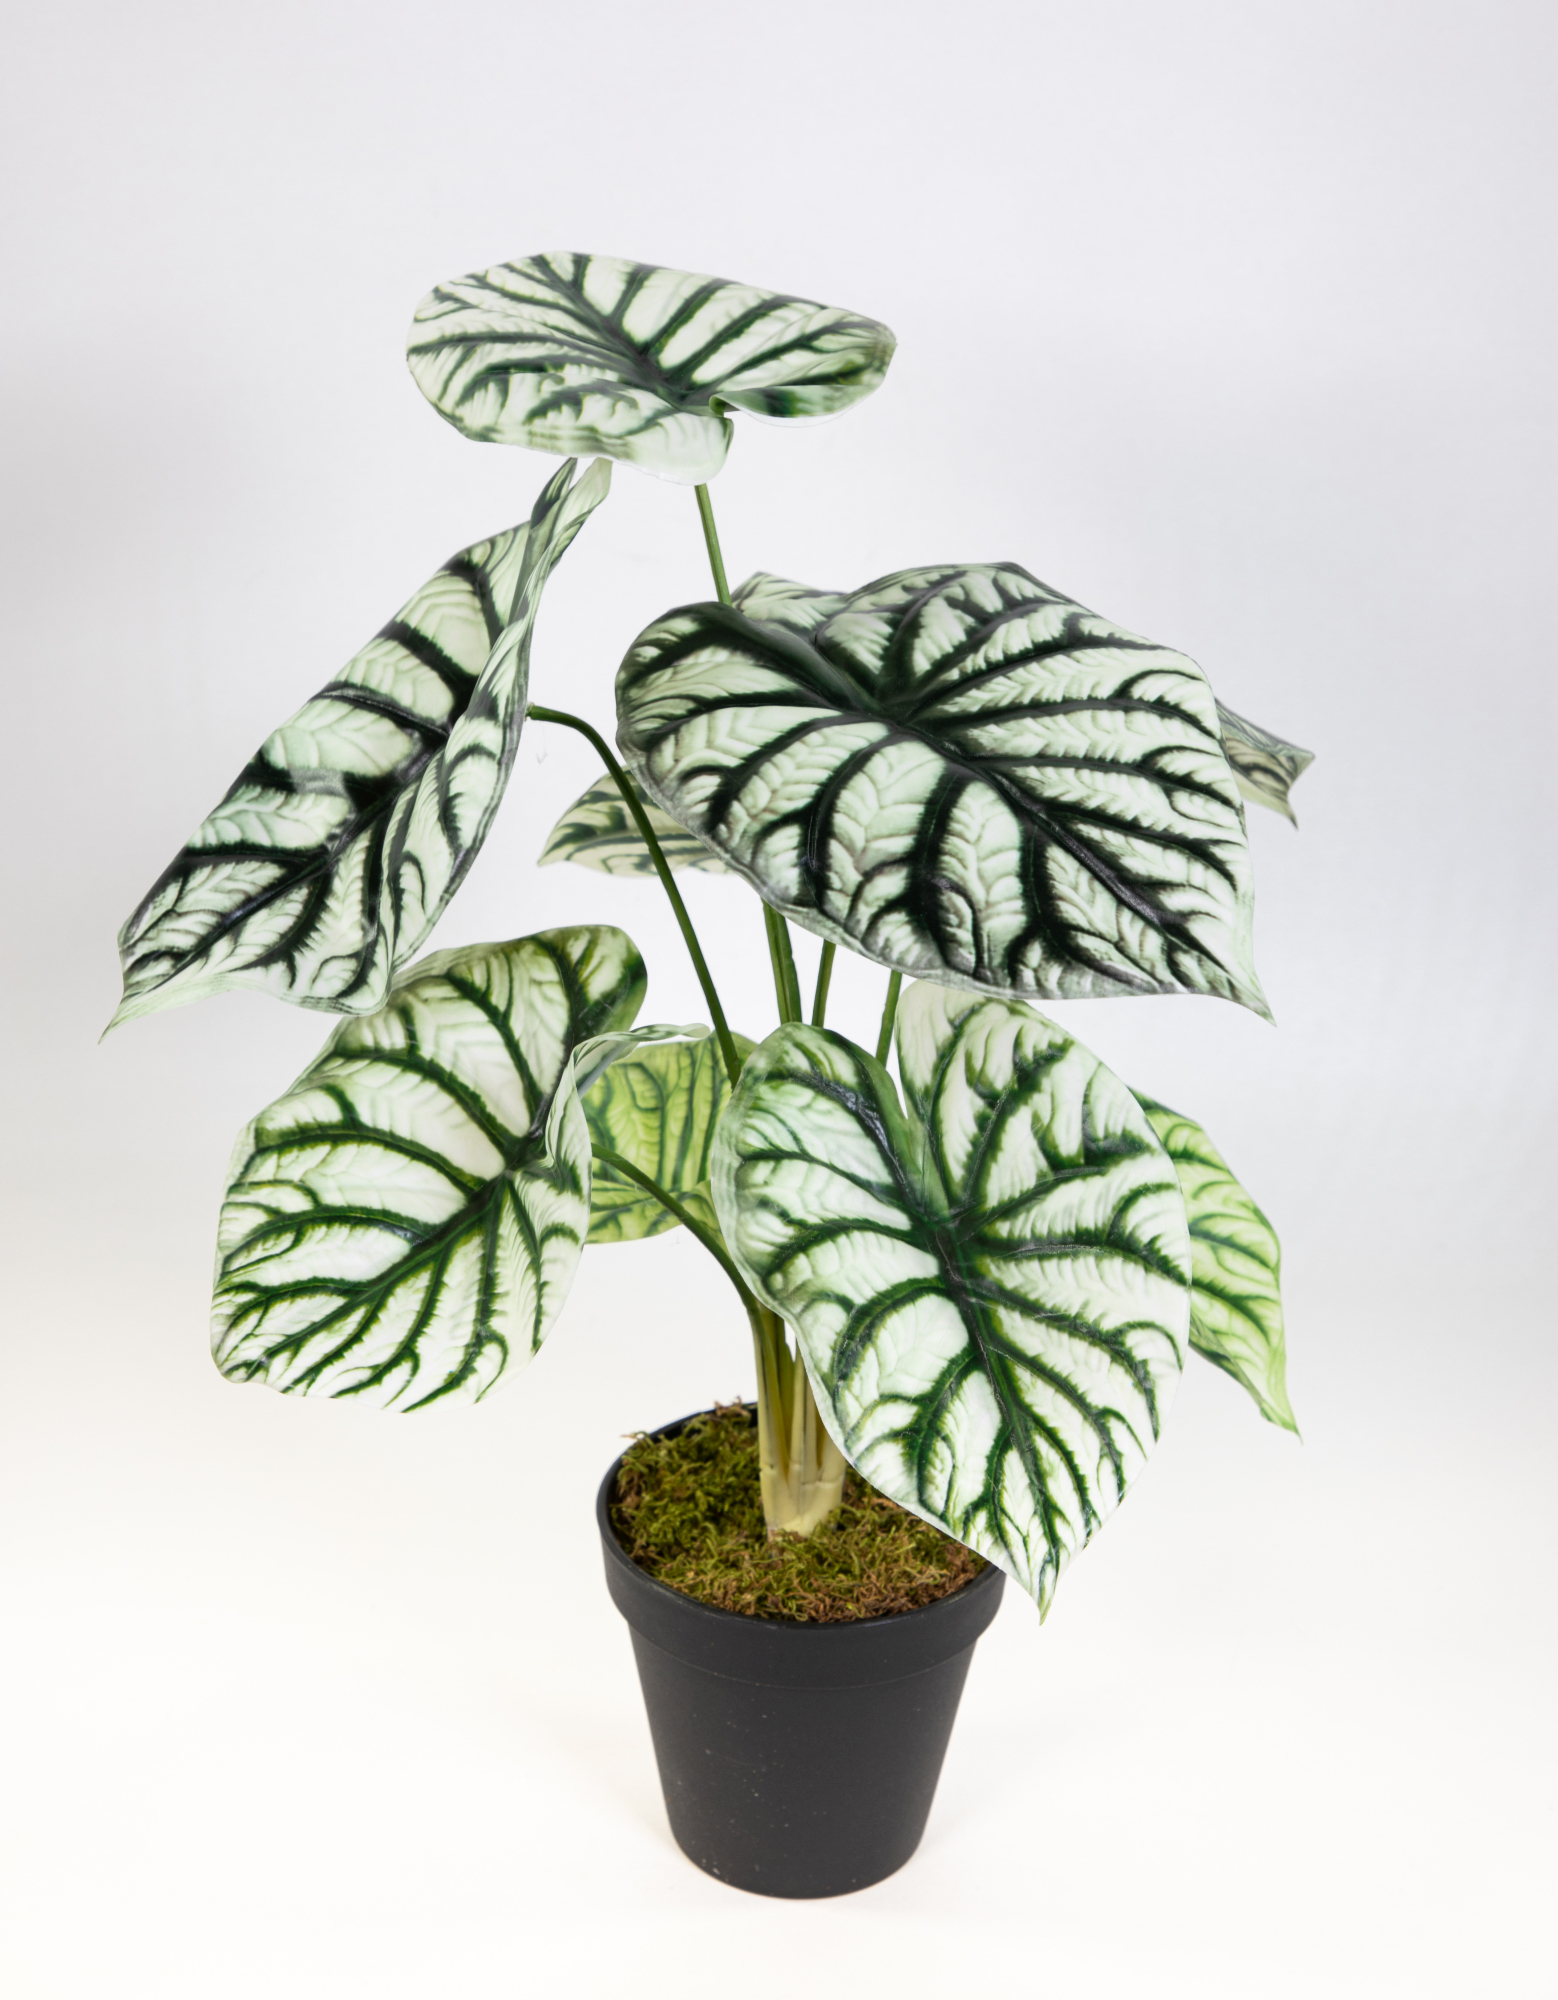 Alocasia Silver Dragon 42cm grün-weiß DP künstliche Pflanzen Kunstpflanzen Dekopflanzen Pfeilblatt